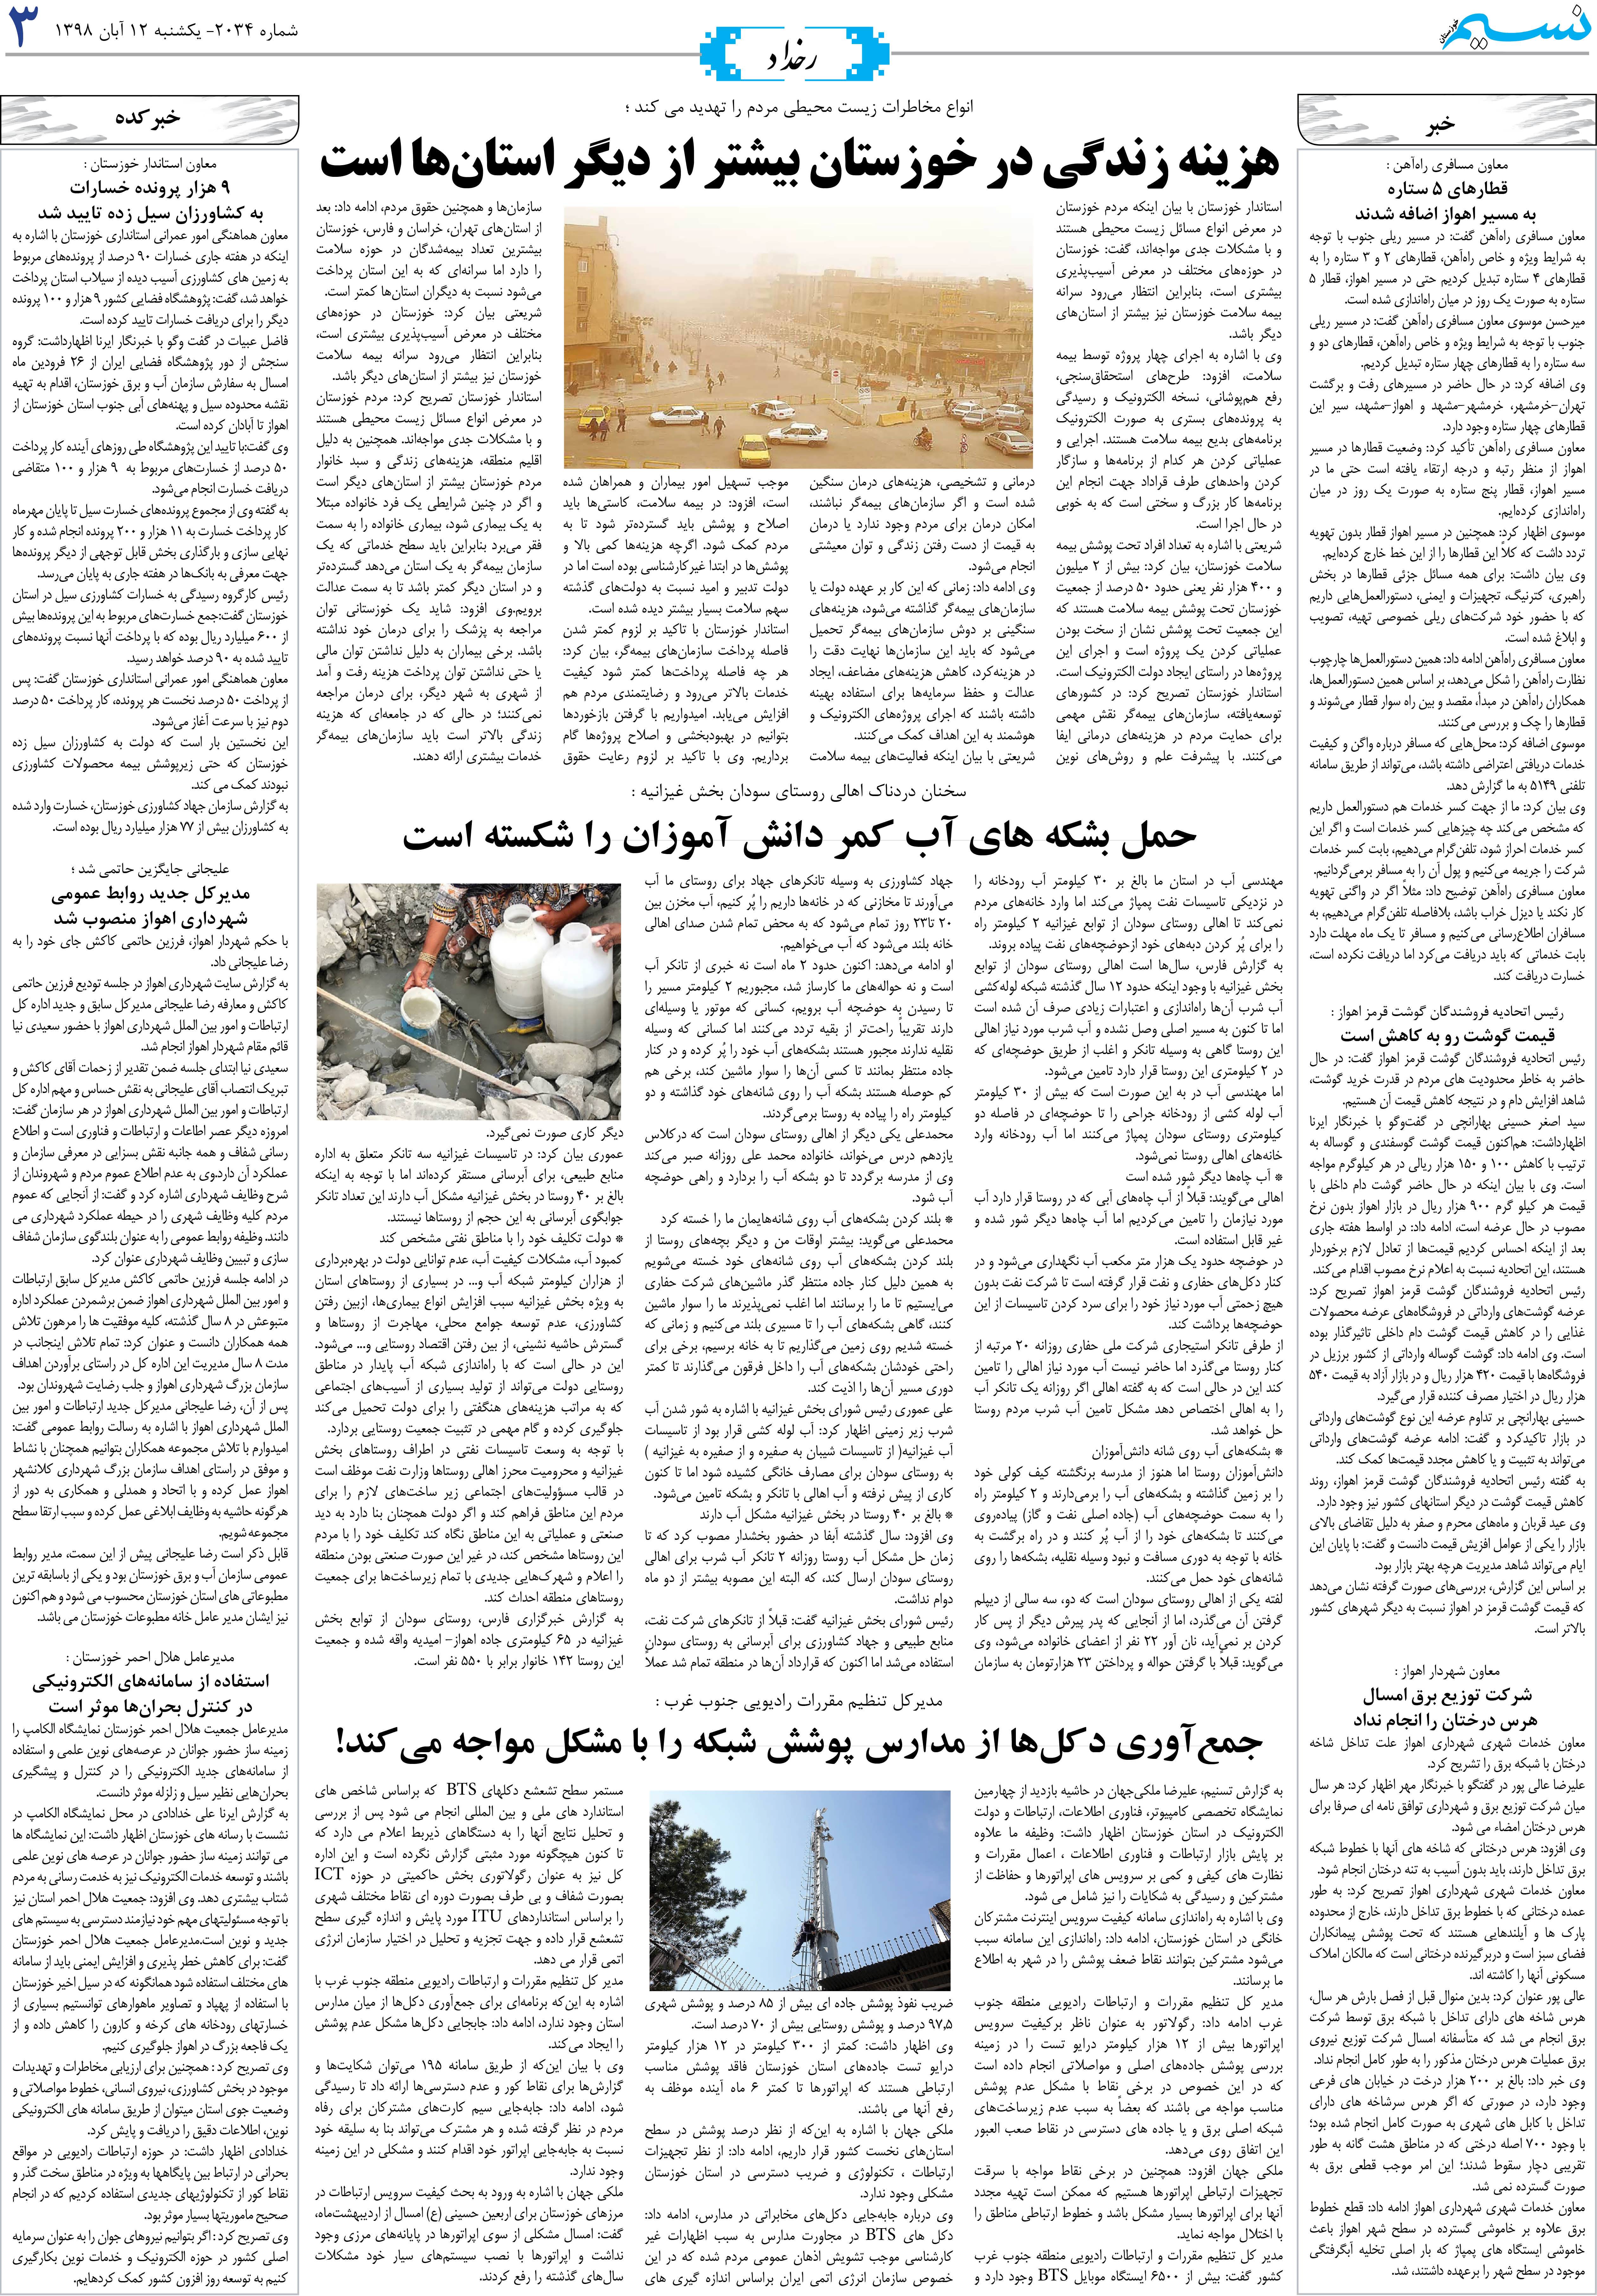 صفحه رخداد روزنامه نسیم شماره 2034